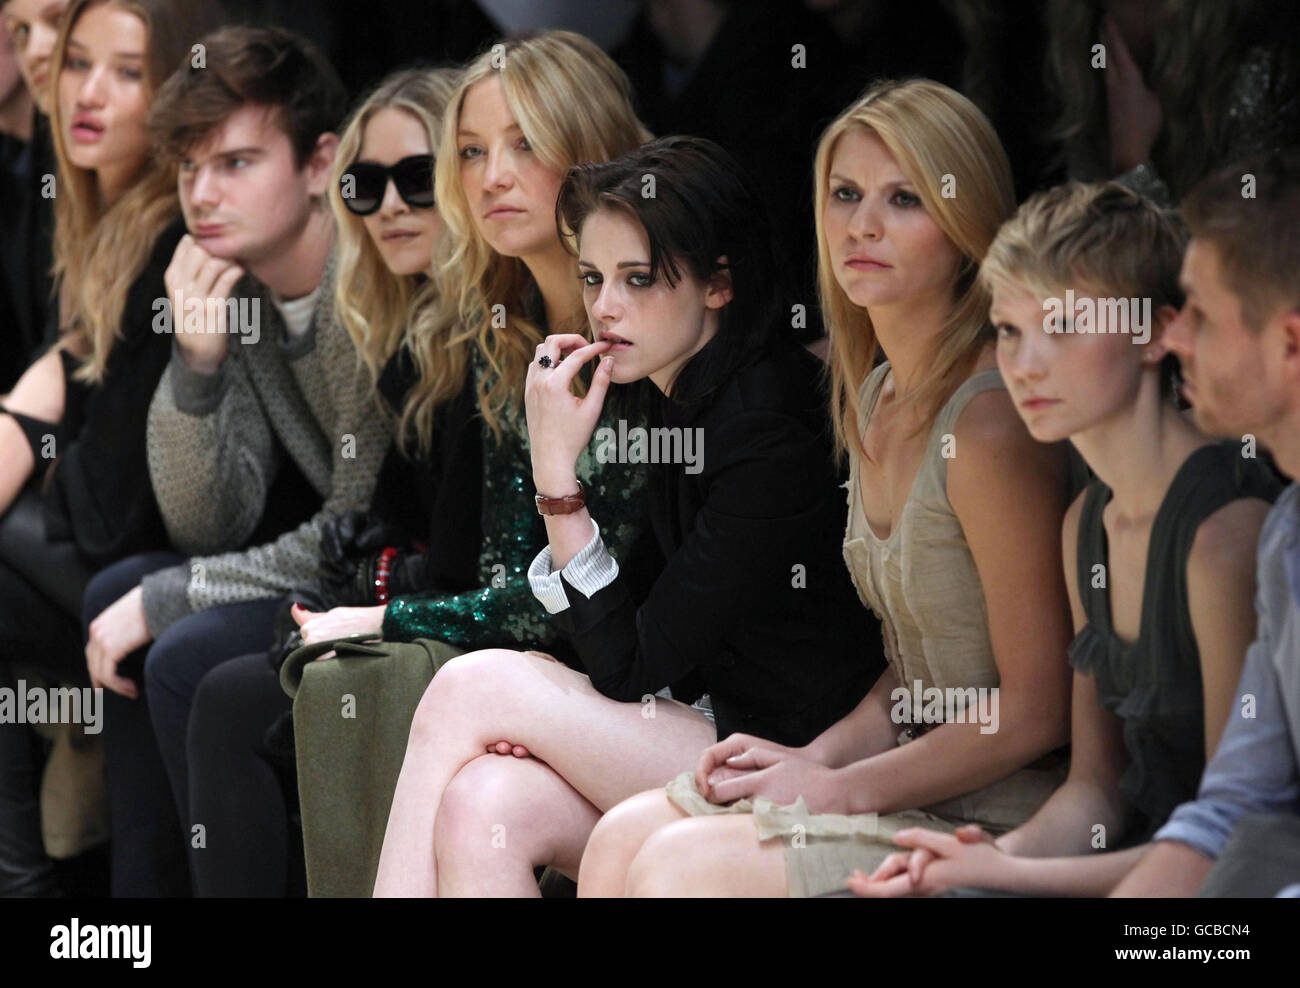 (De gauche à droite) Mary Kate Olsen, Kate Hudson, Kristen Stewart, Claire Danes et Mia Wasikowska assistent au spectacle Burberry Prorsum de l'automne/hiver 2010, au Chelsea College of Art and Design, dans le centre de Londres. Banque D'Images